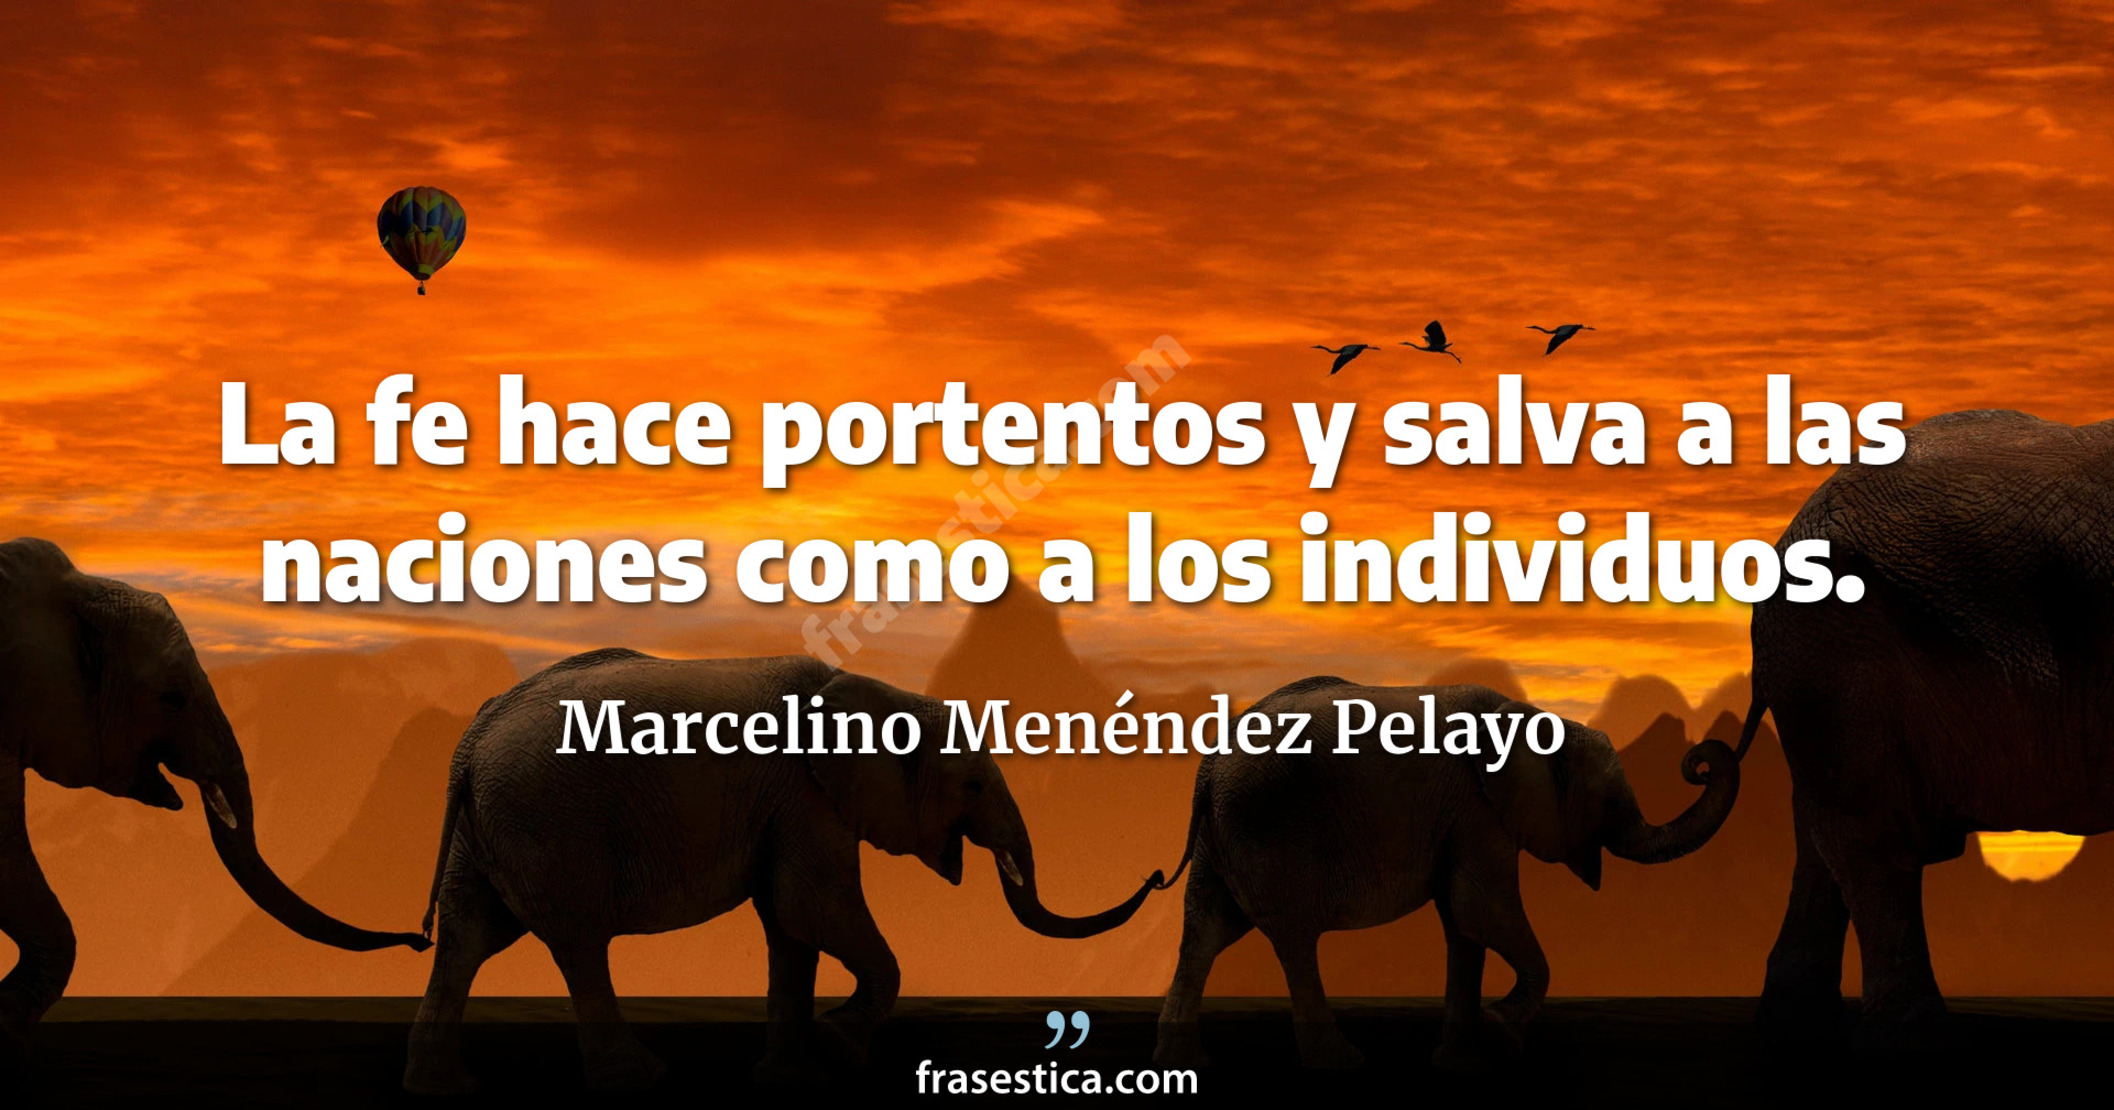 La fe hace portentos y salva a las naciones como a los individuos. - Marcelino Menéndez Pelayo